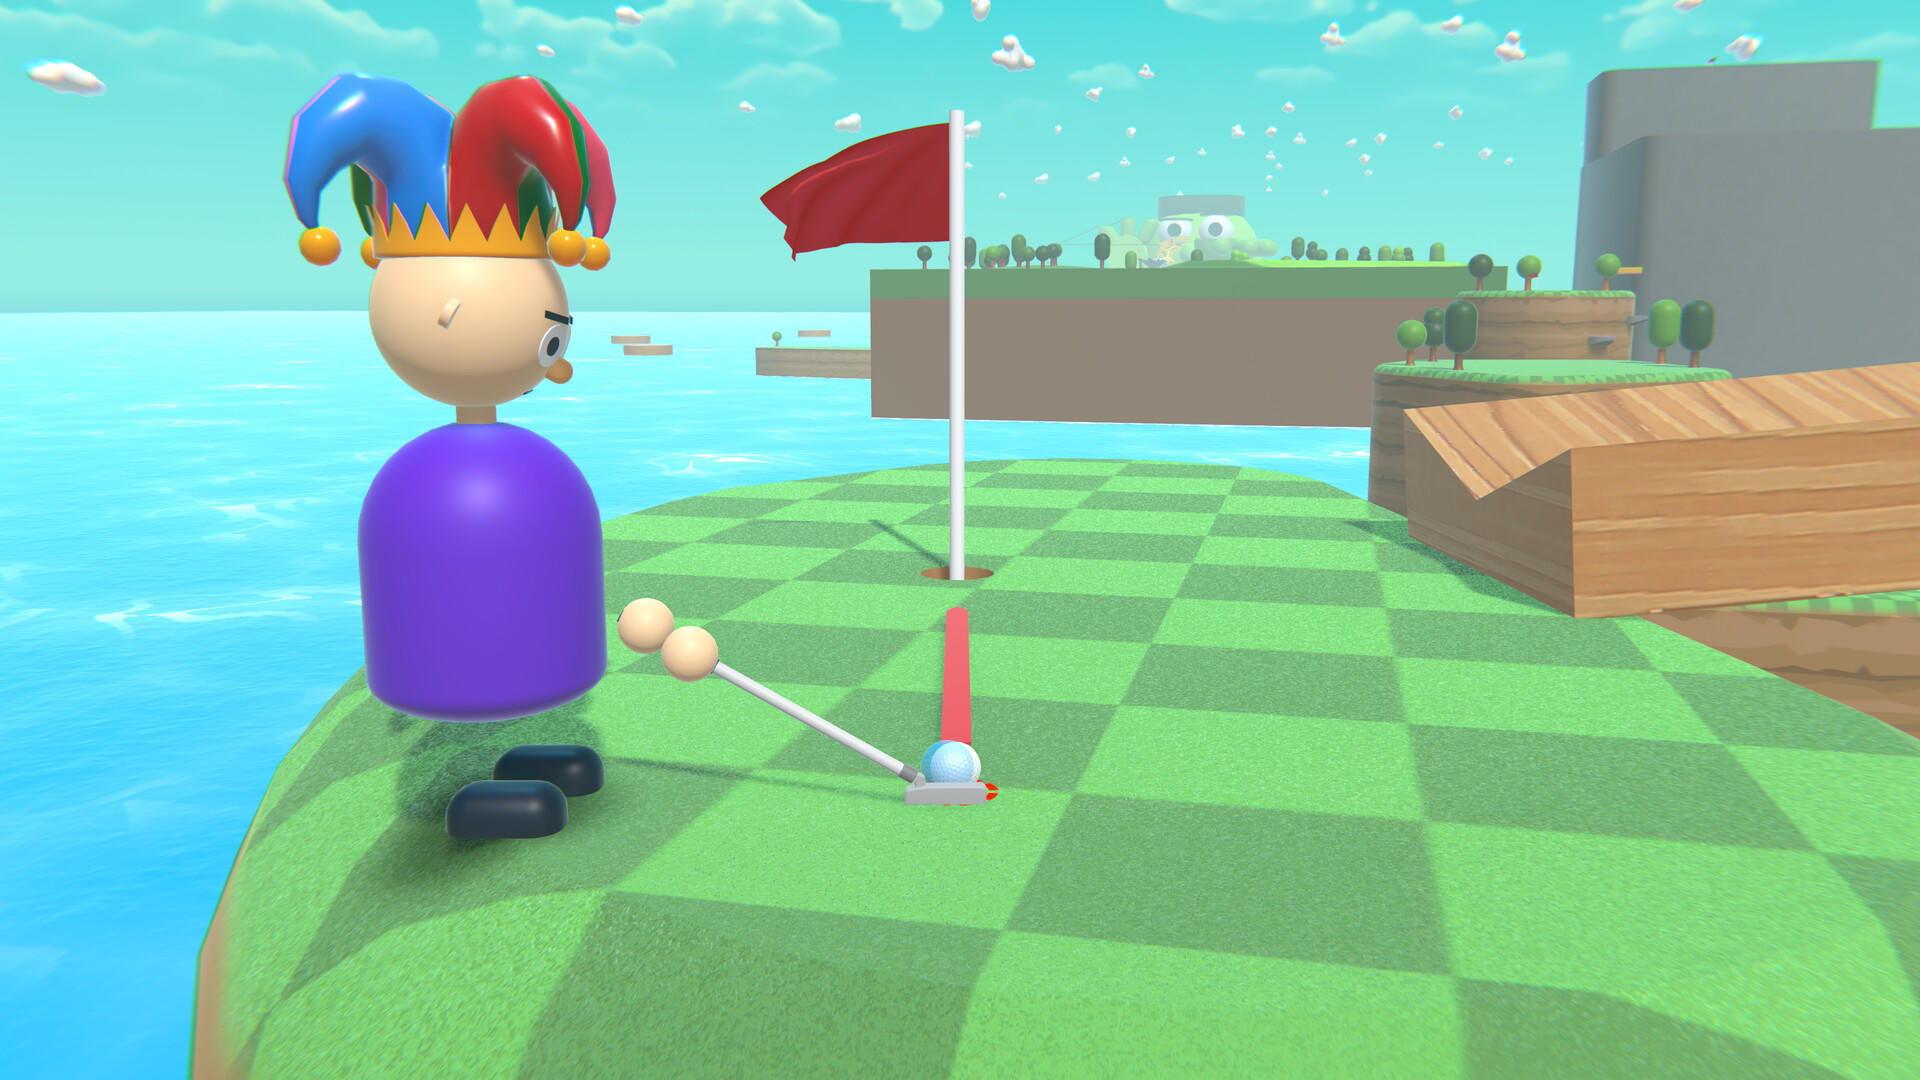 Screenshot 1 of मल्टीप्लेयर प्लेटफार्म गोल्फ 